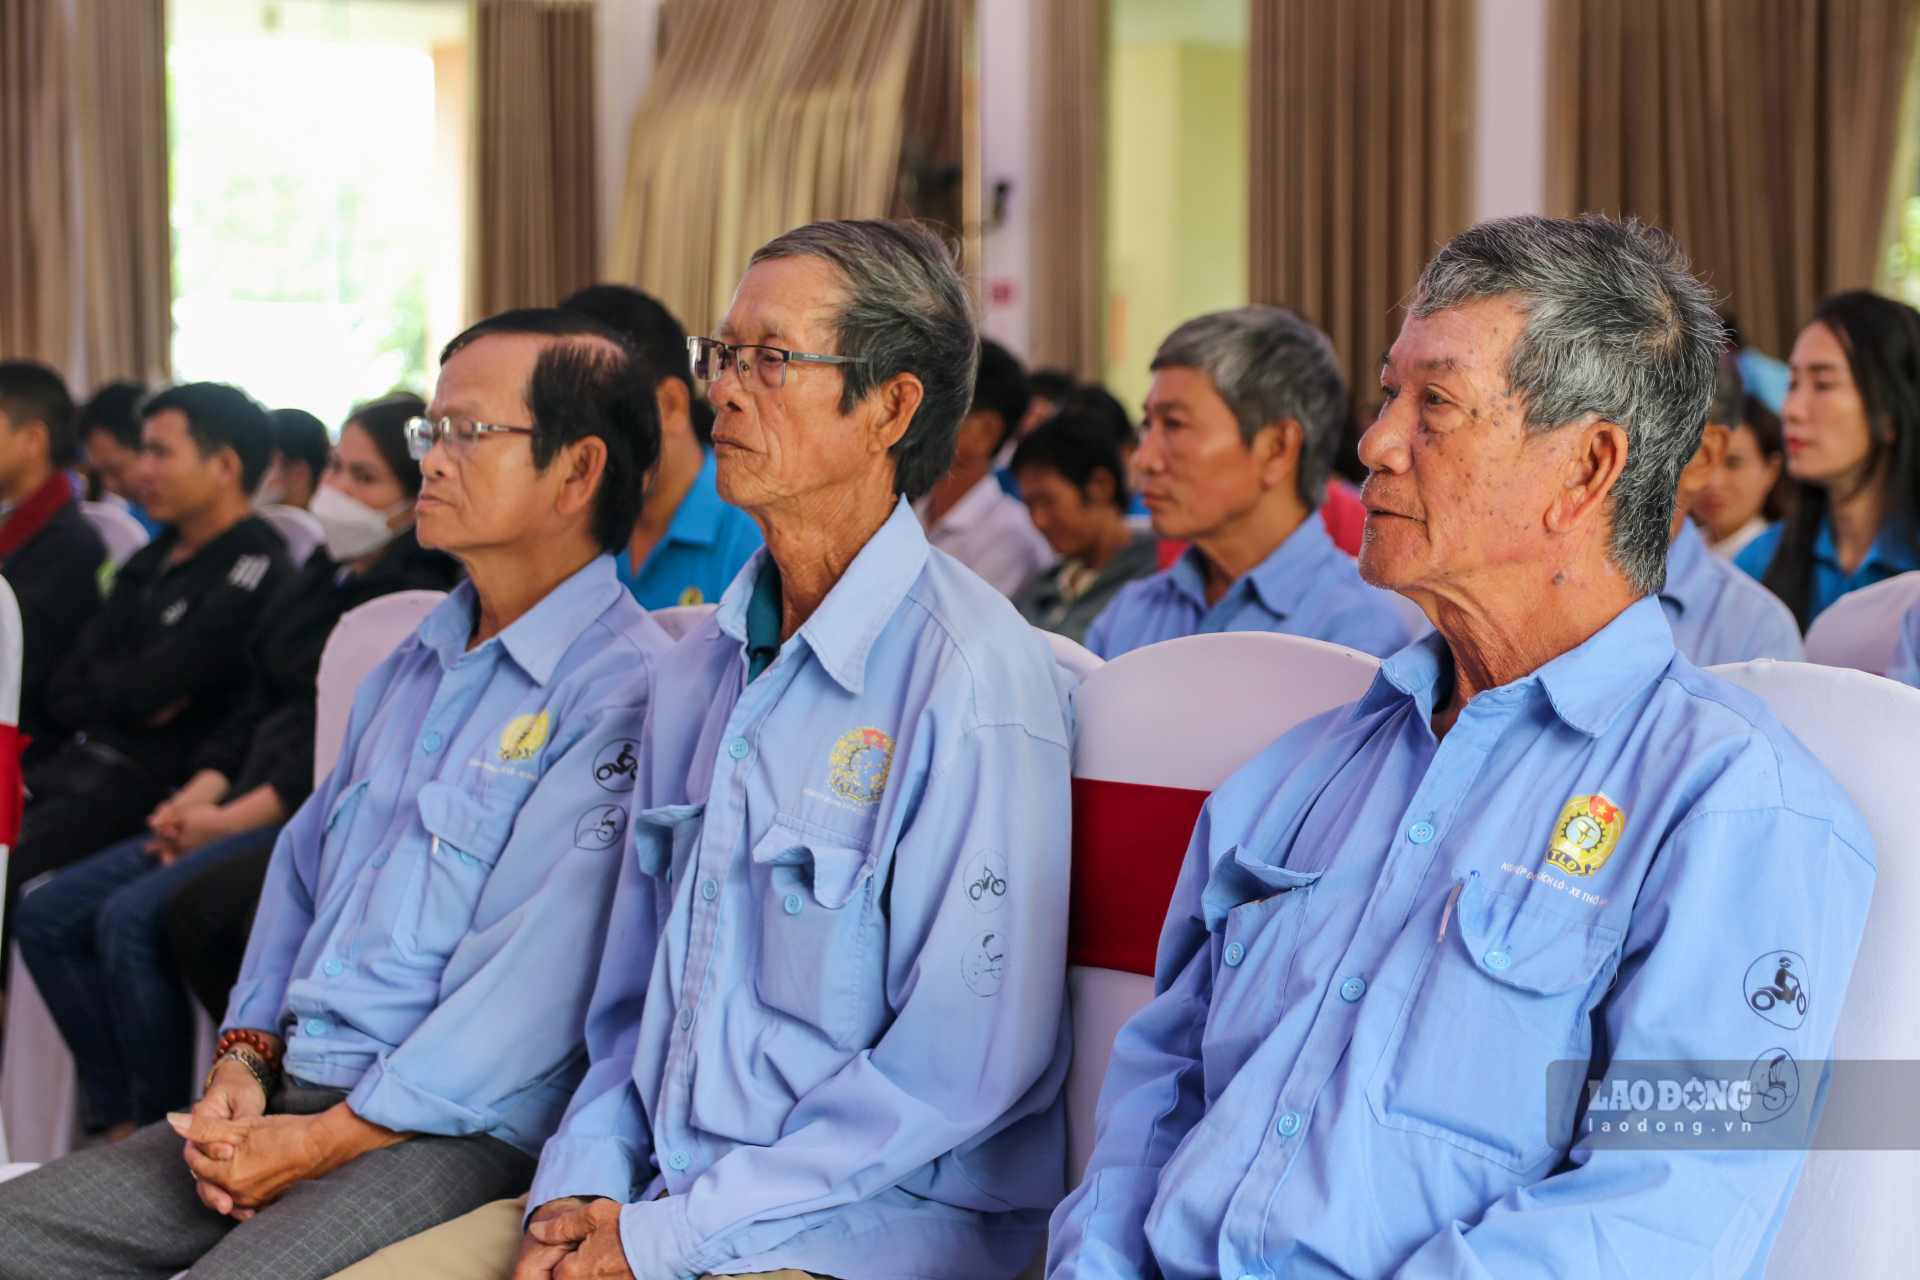 Đoàn viên, người lao động tham dự đối thoại. Ảnh: Nguyễn Luân.